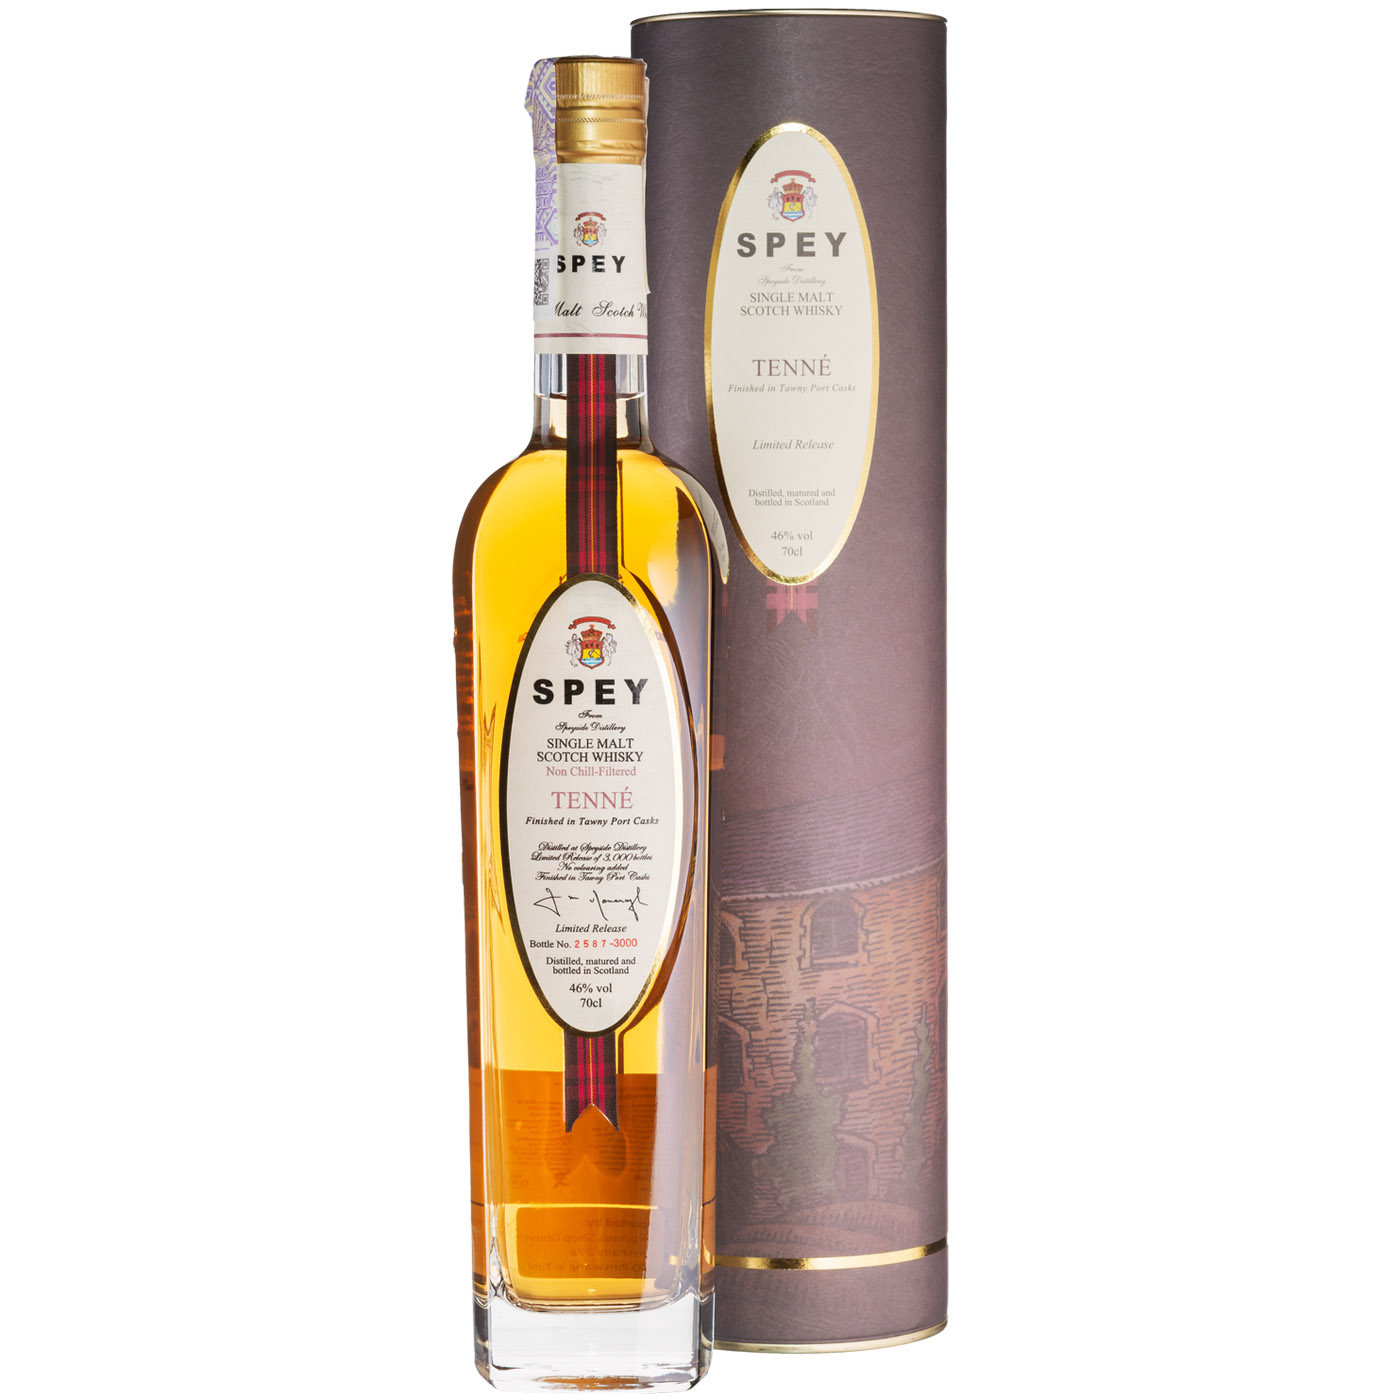 Віскі Spey Tenne Single Malt Scotch Whisky,в подарунковій упаковці, 46%, 0,7 л - фото 1